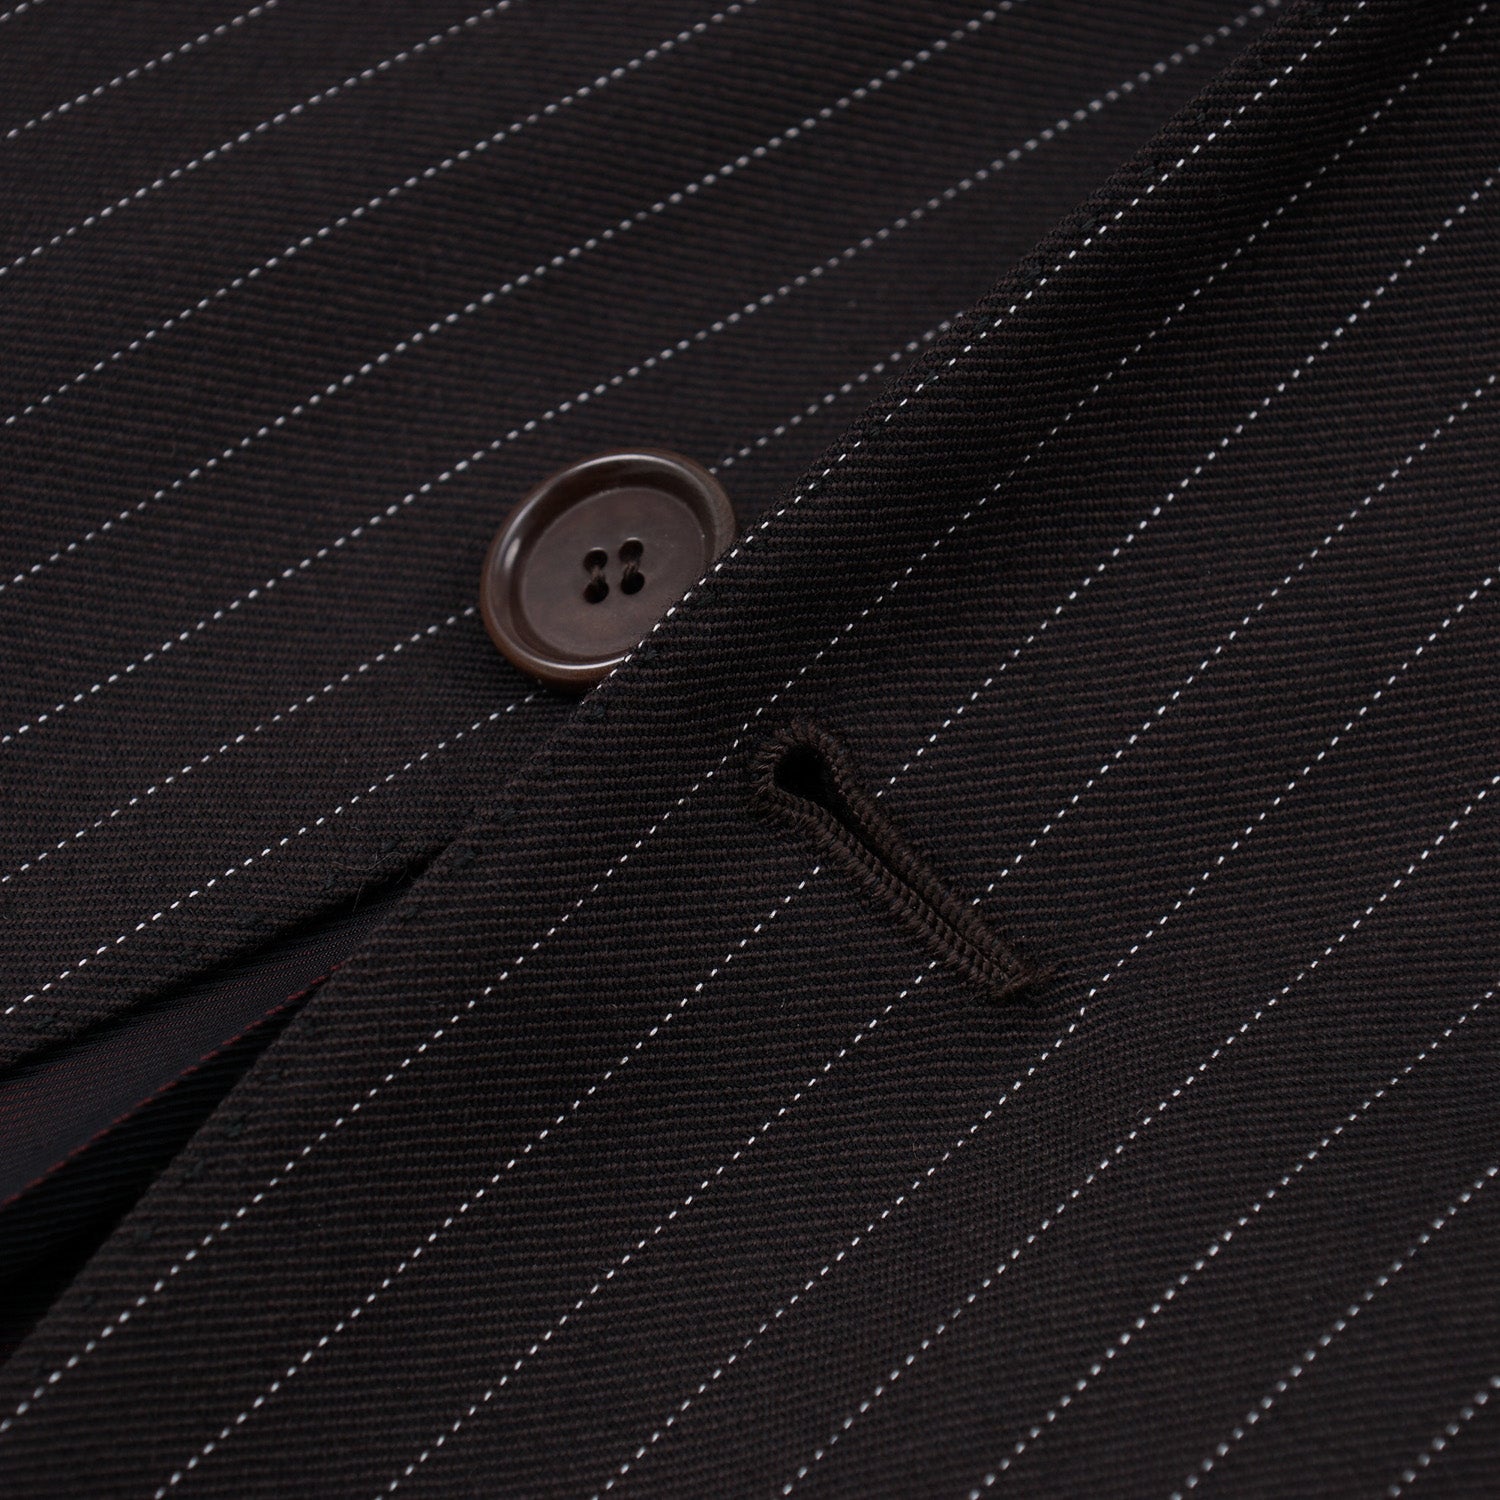 Cesare Attolini Slim-Fit Wool Suit - Top Shelf Apparel